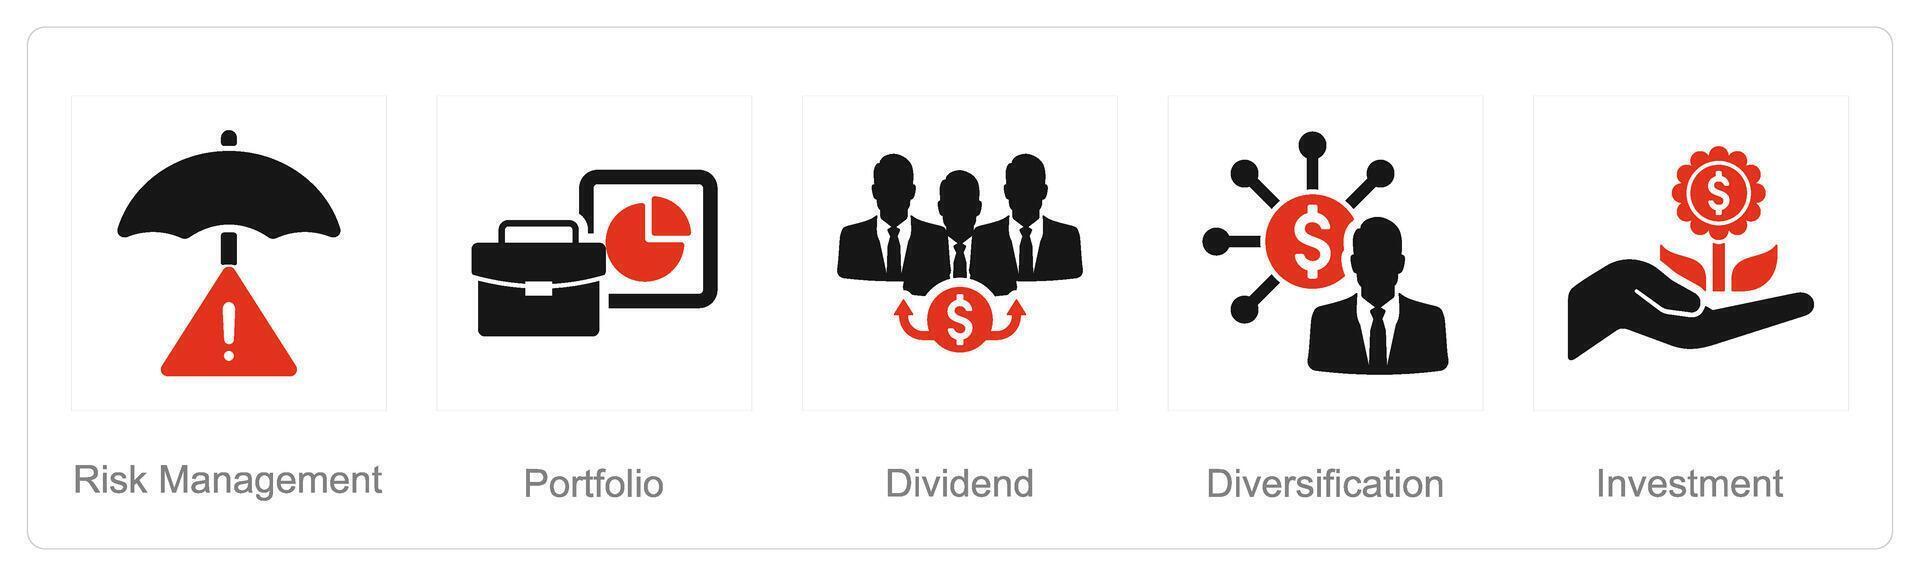 en uppsättning av 5 investering ikoner som fara förvaltning , portfölj, utdelning vektor